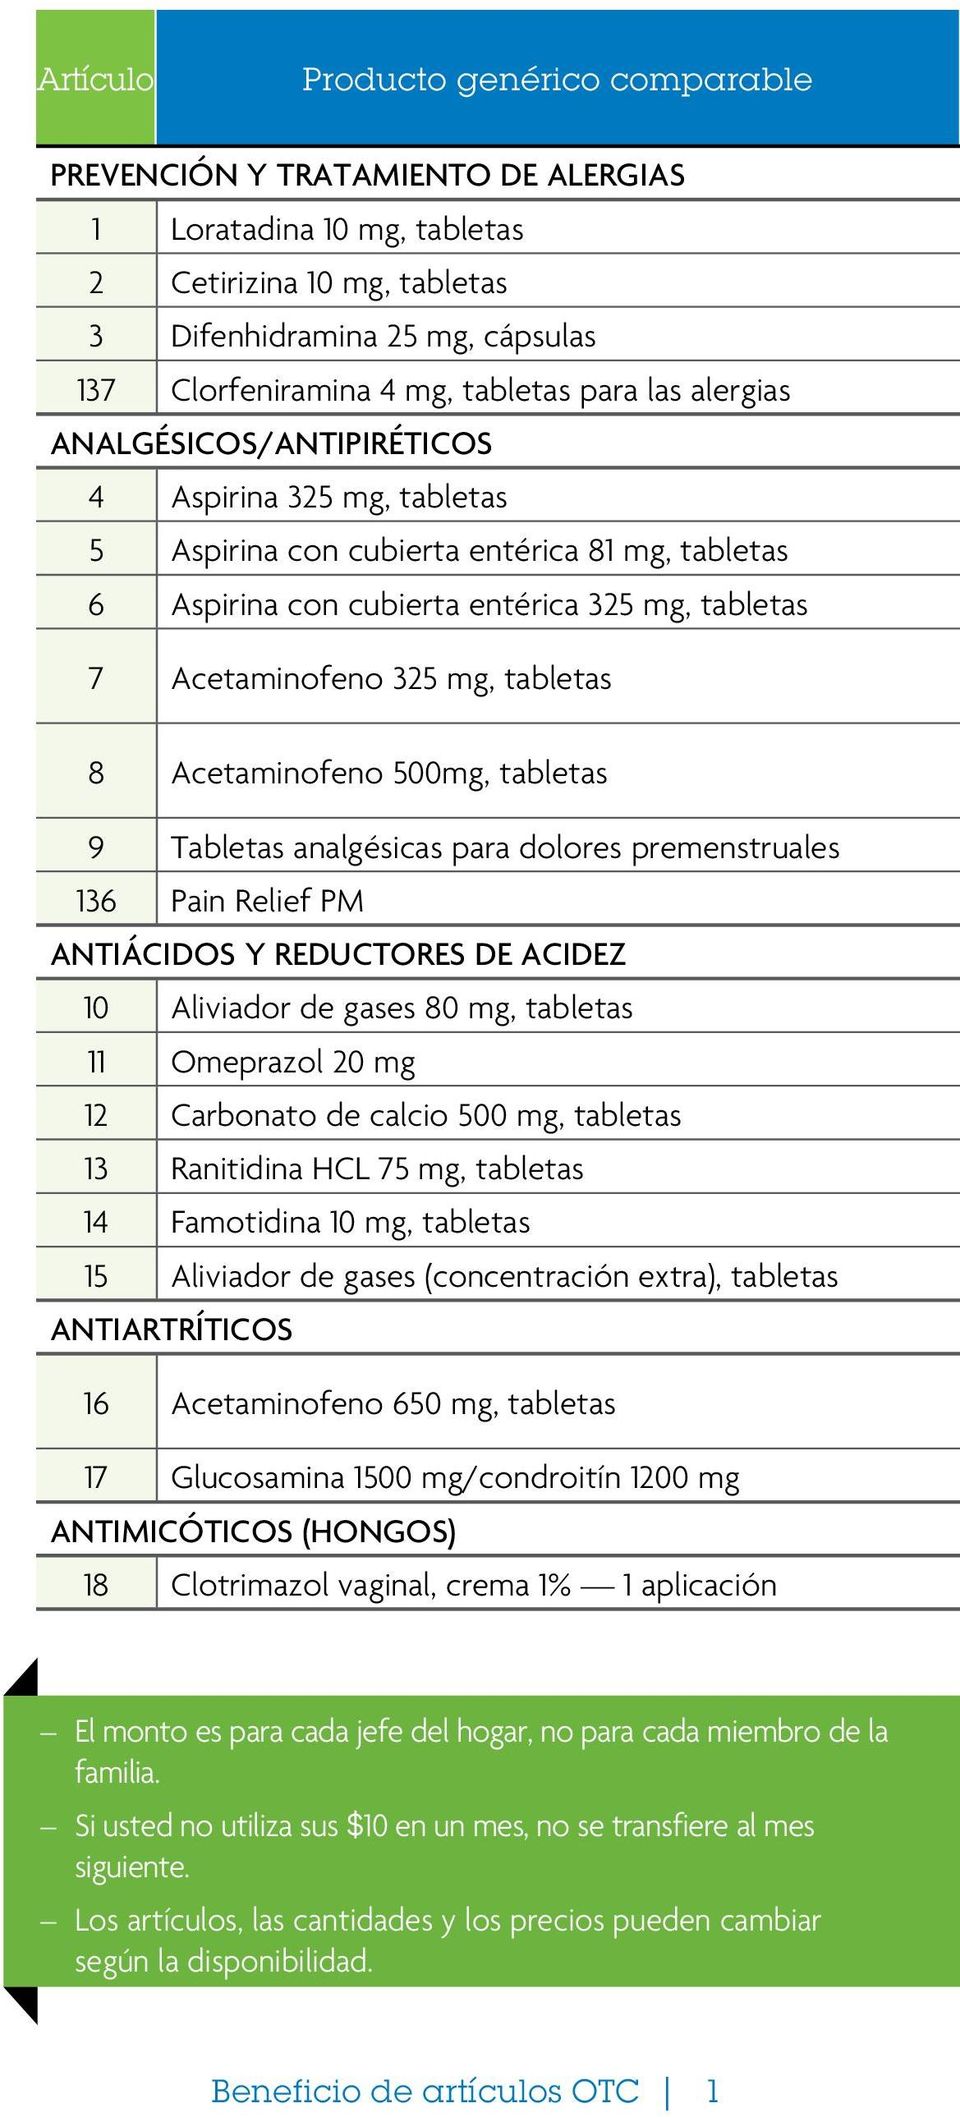 tabletas 8 Acetaminofeno 500mg, tabletas 9 Tabletas analgésicas para dolores premenstruales 136 Pain Relief PM ANTIÁCIDOS Y REDUCTORES DE ACIDEZ 10 Aliviador de gases 80 mg, tabletas 11 Omeprazol 20